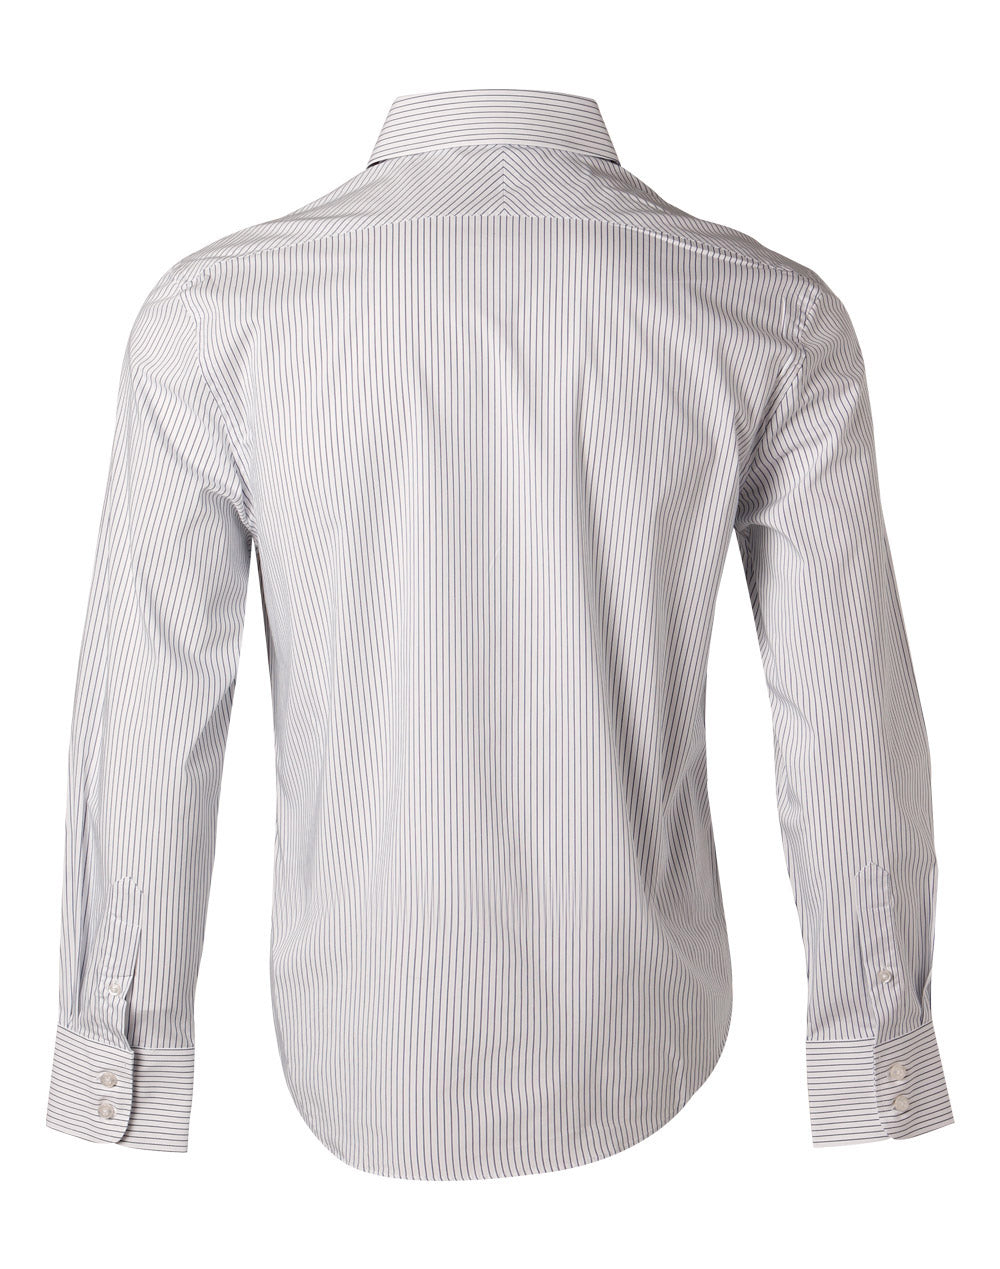 Winning Spirit-Men's Ticking Stripe Long Sleeve Shirt-M7200L